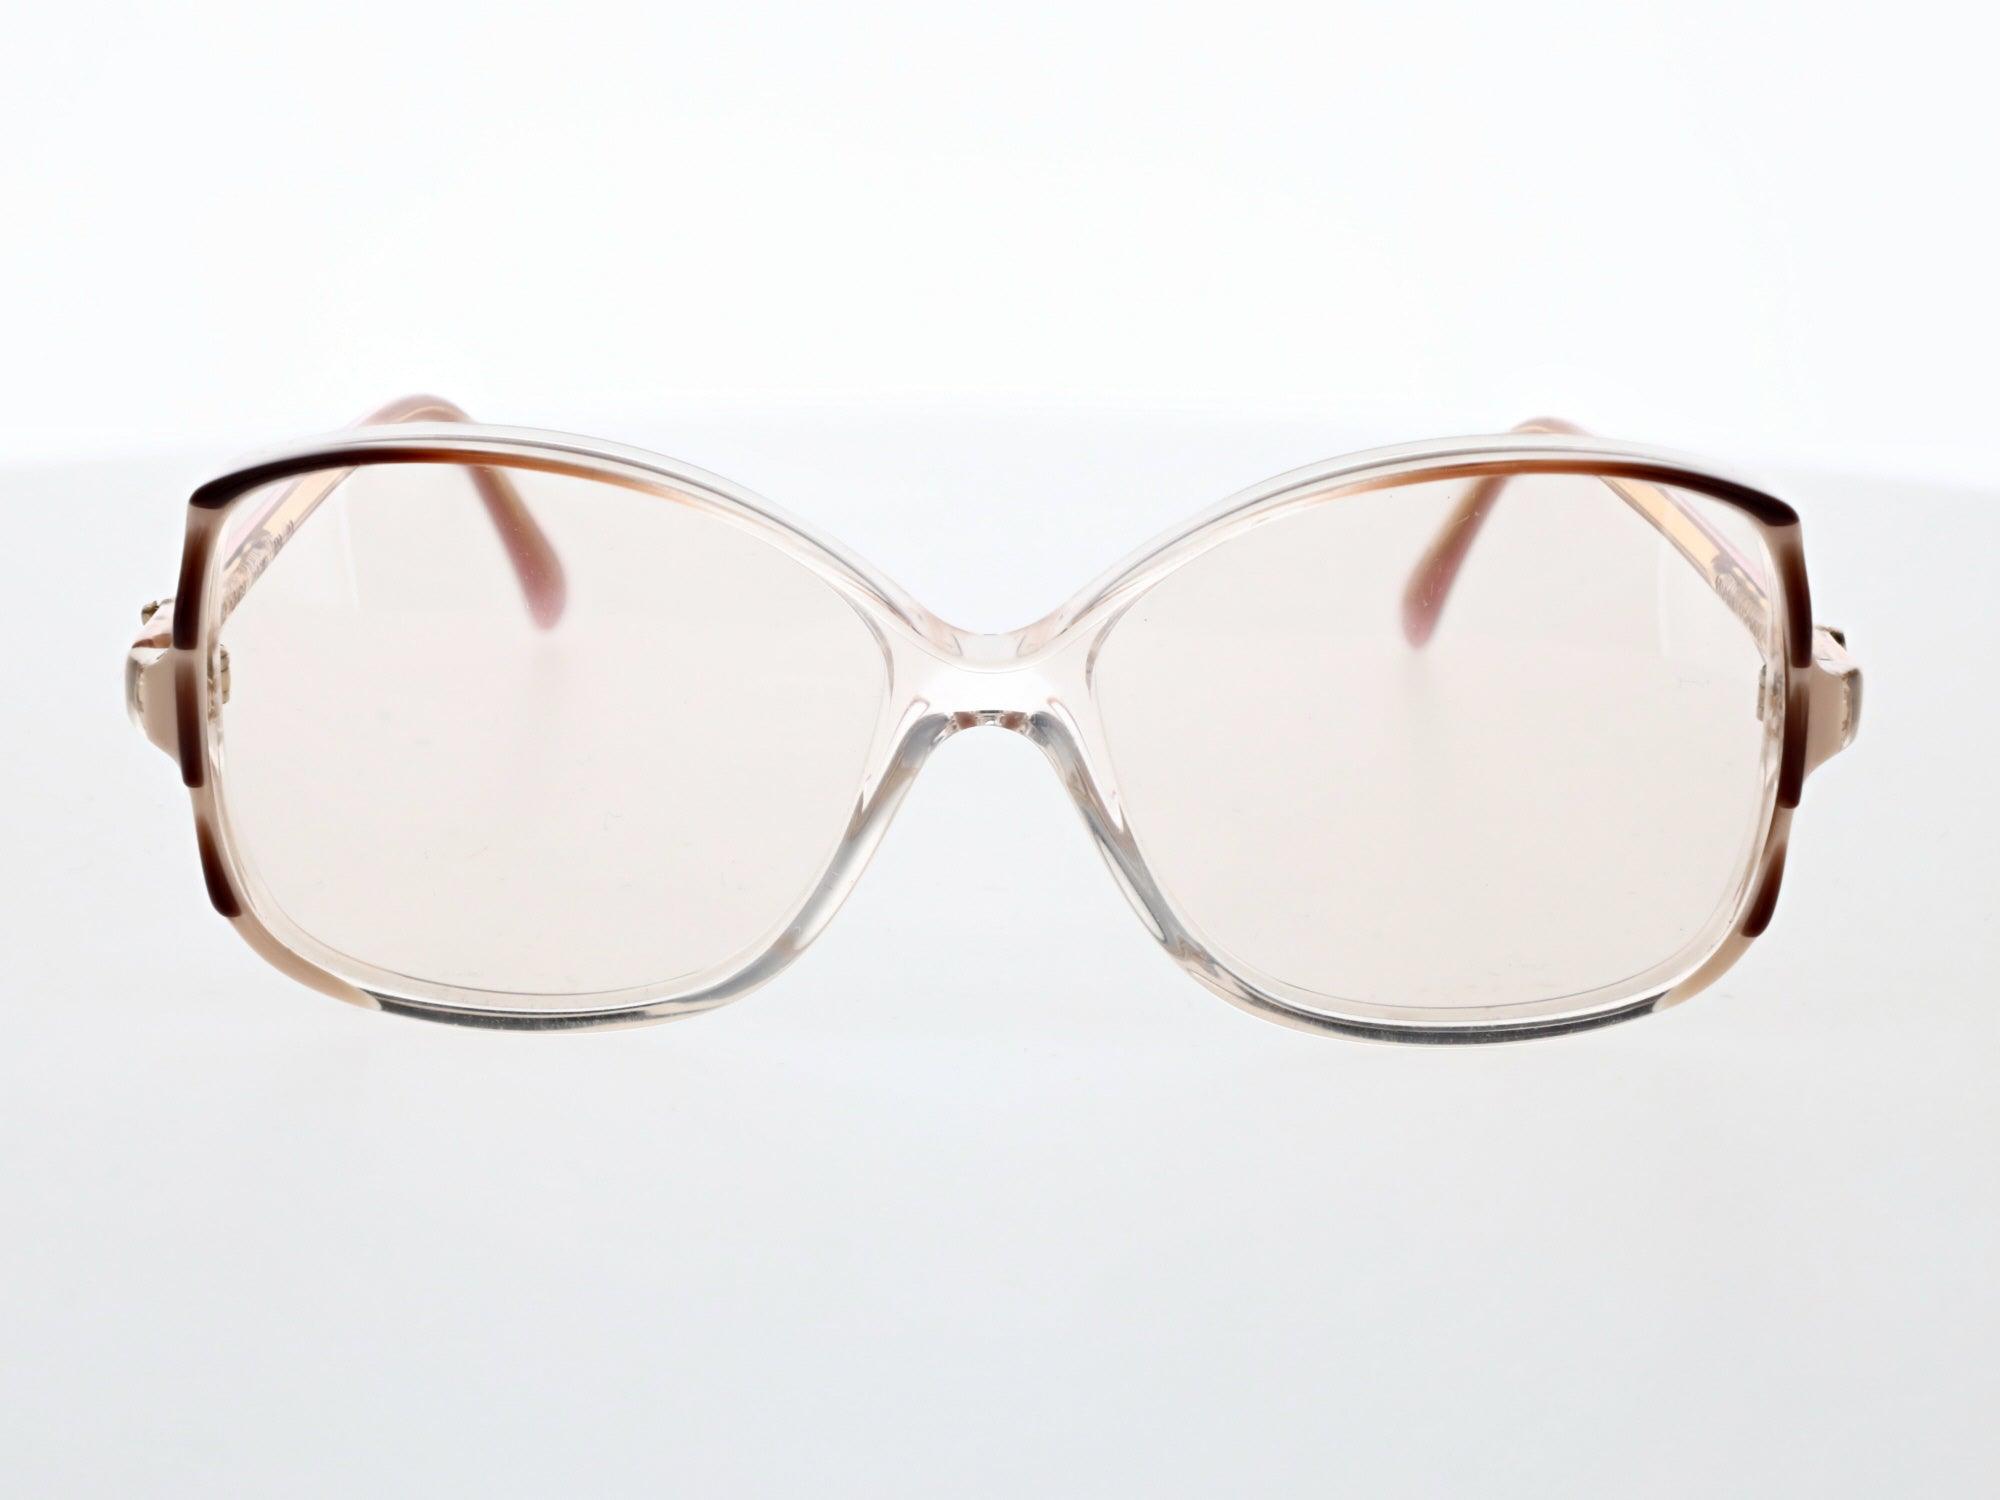 Franck Olivier Eyeglasses, 744 44 - Vision 770